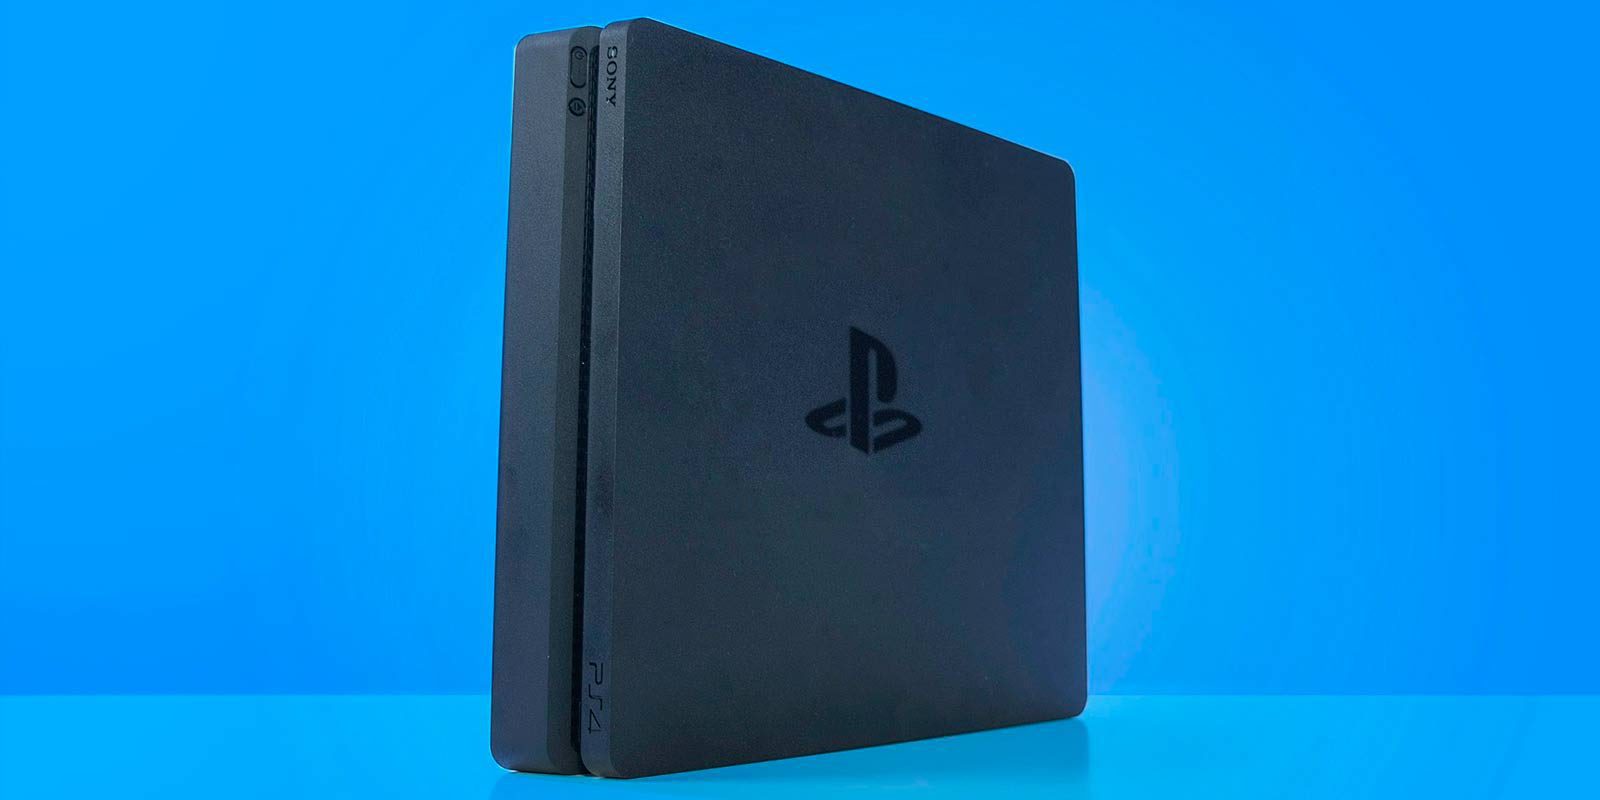 PlayStation 4 ha distribuido ya más de 60 millones de unidades